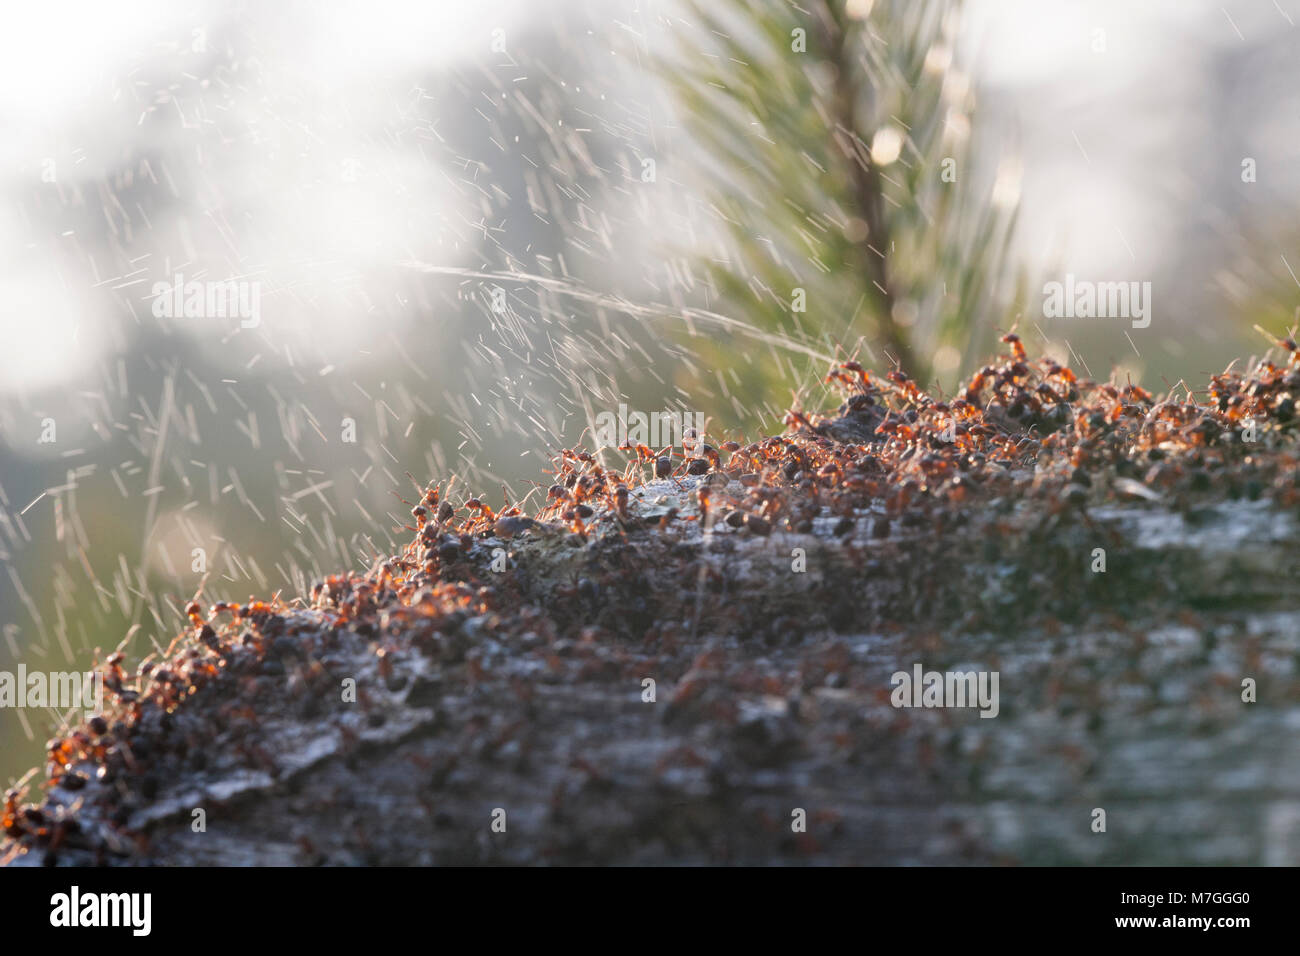 Waldameisen - Formica rufa-verteidigt ihr Nest durch Spritzen Ameisensäure. Die Ameisensäure wird verwendet, um die angreifenden Feinde abzuschrecken. Dorset England UK GB. Stockfoto